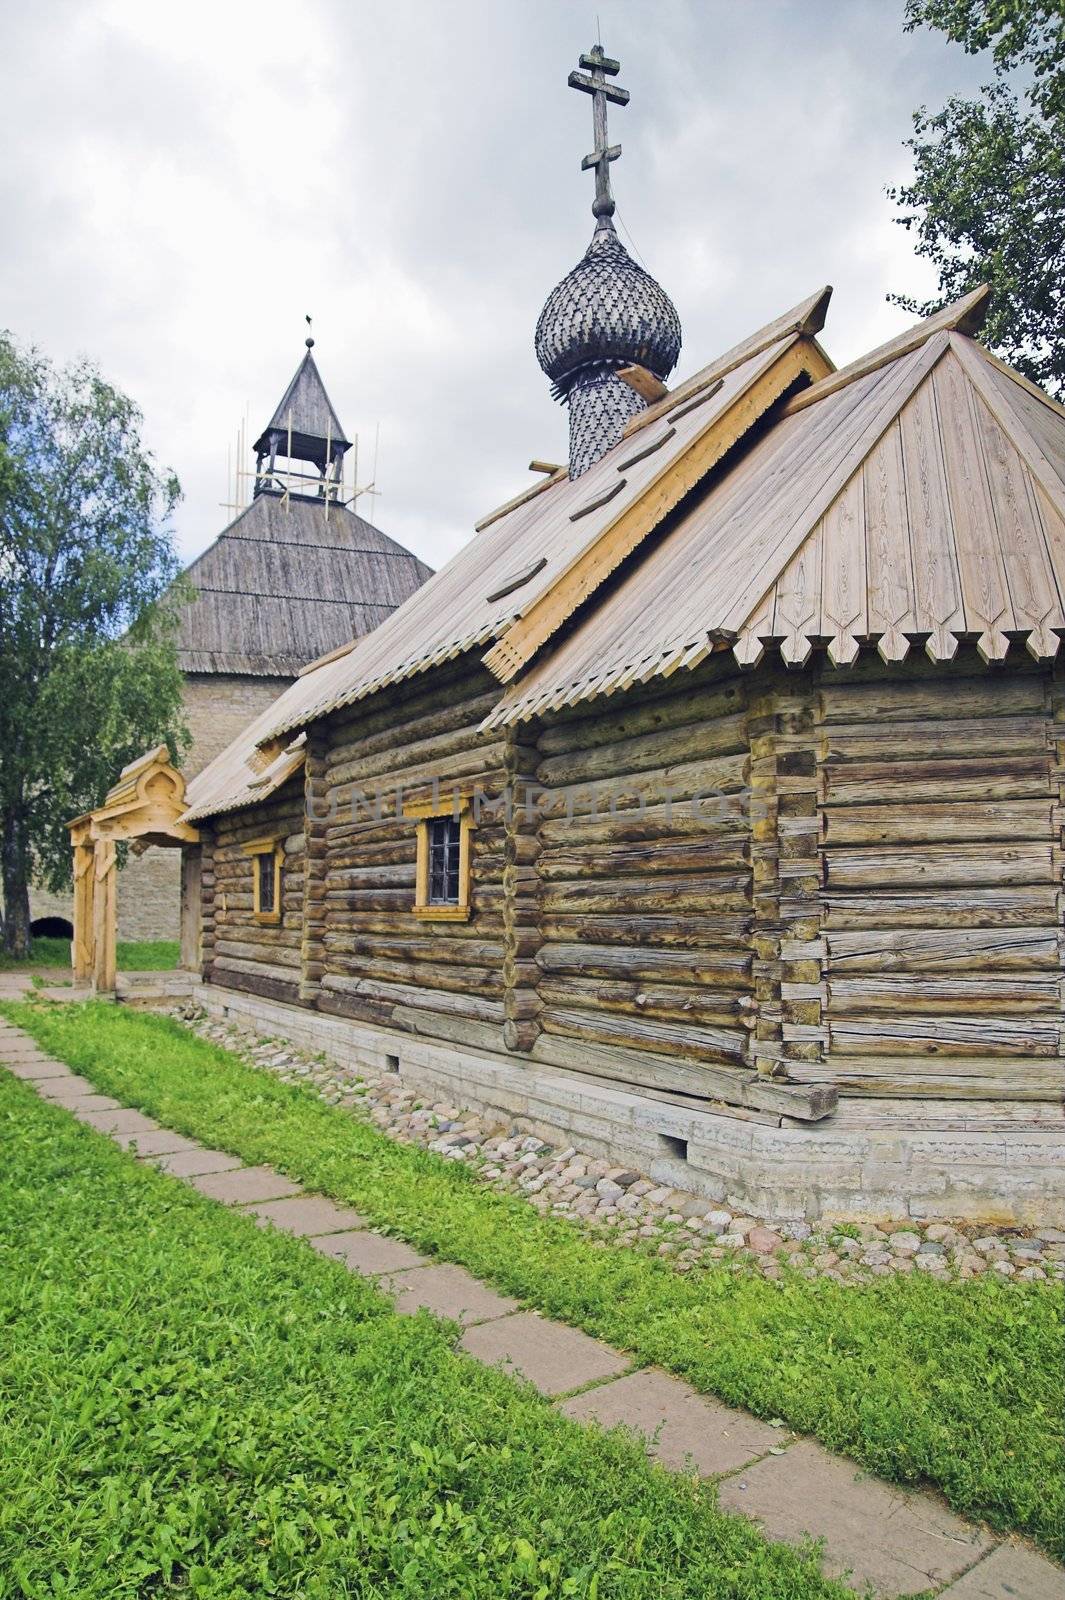 Ancient Russian loghouse church near Saint Petersburg, Russia.